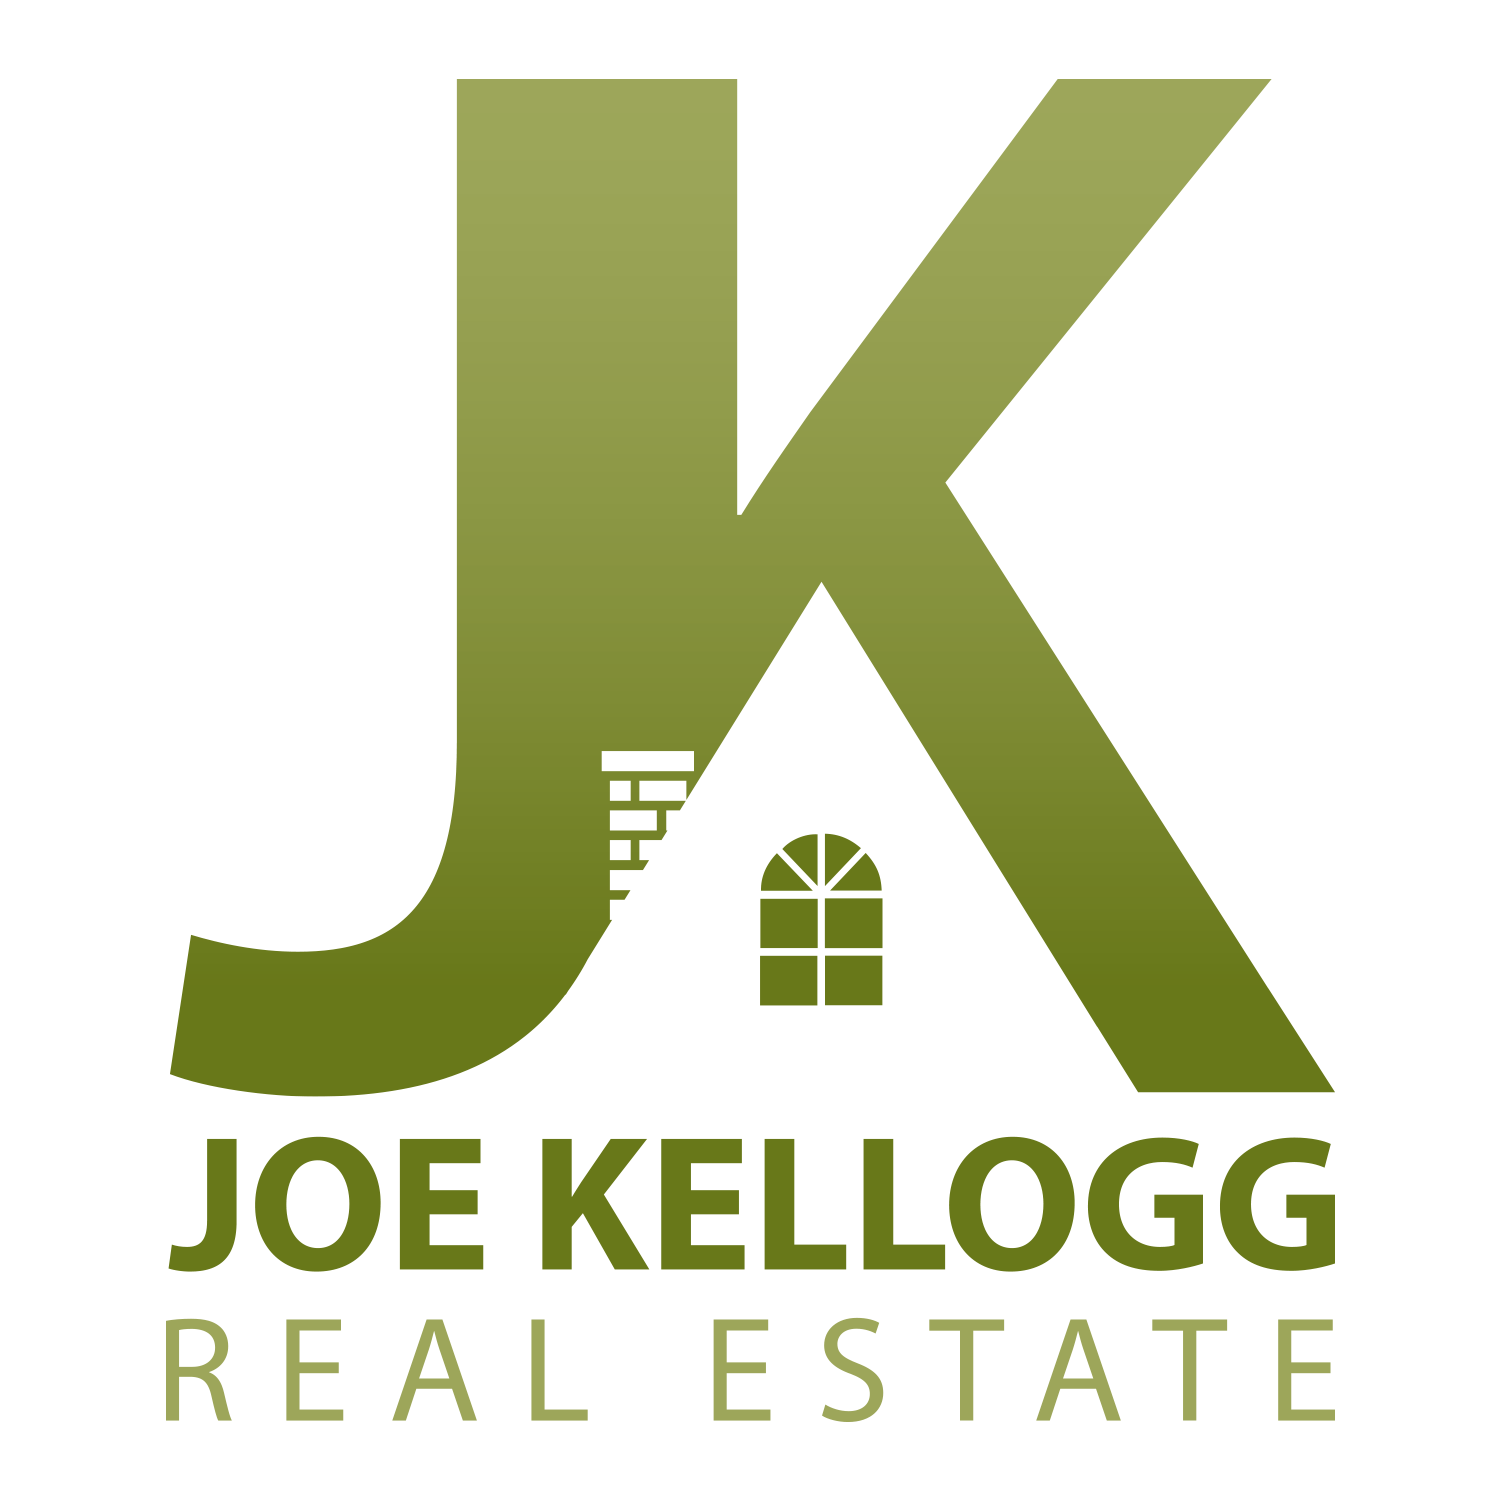 Joe Kellogg Real Estate